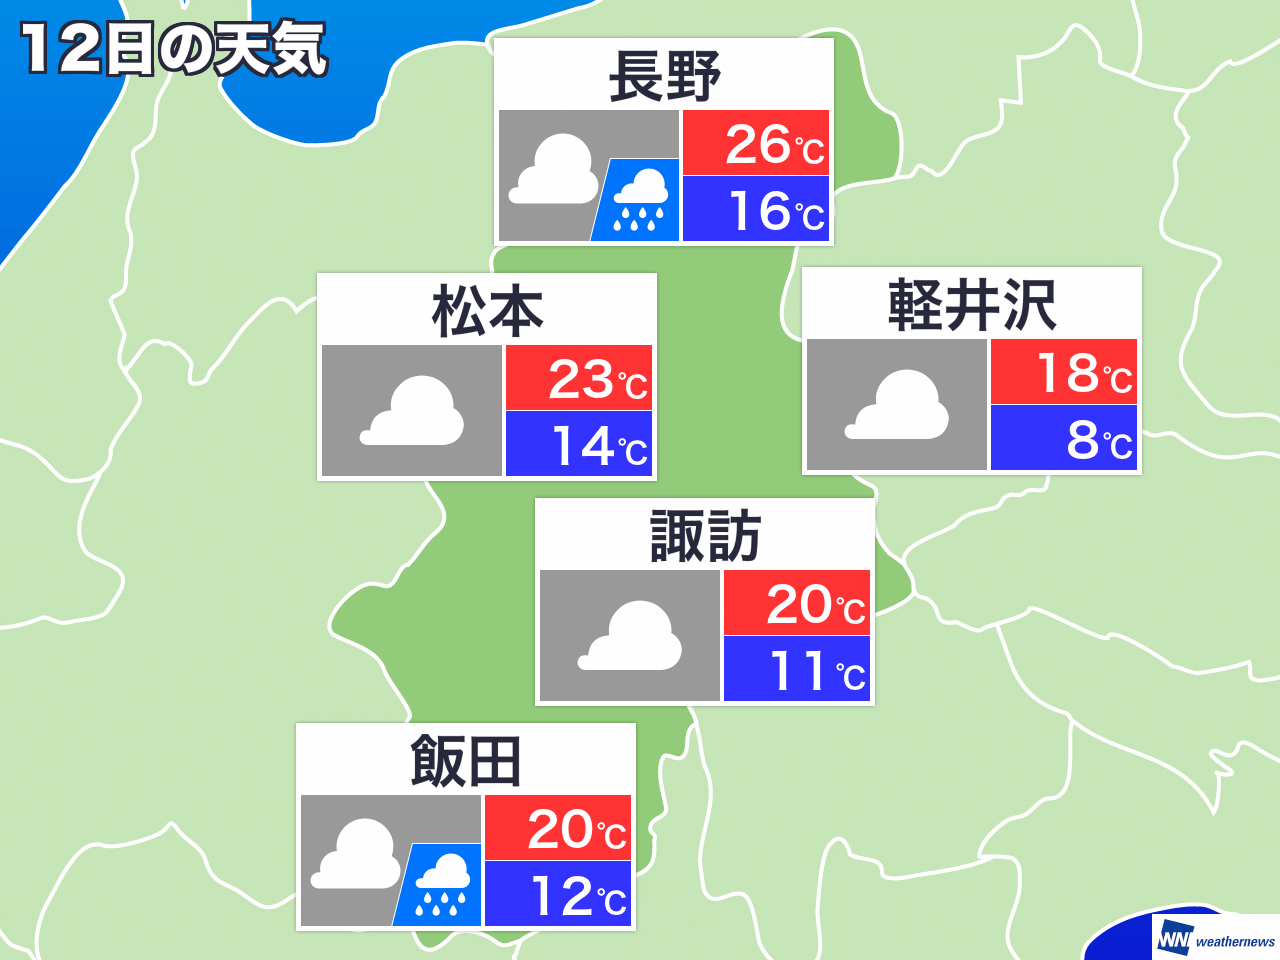 松本 天気 予報